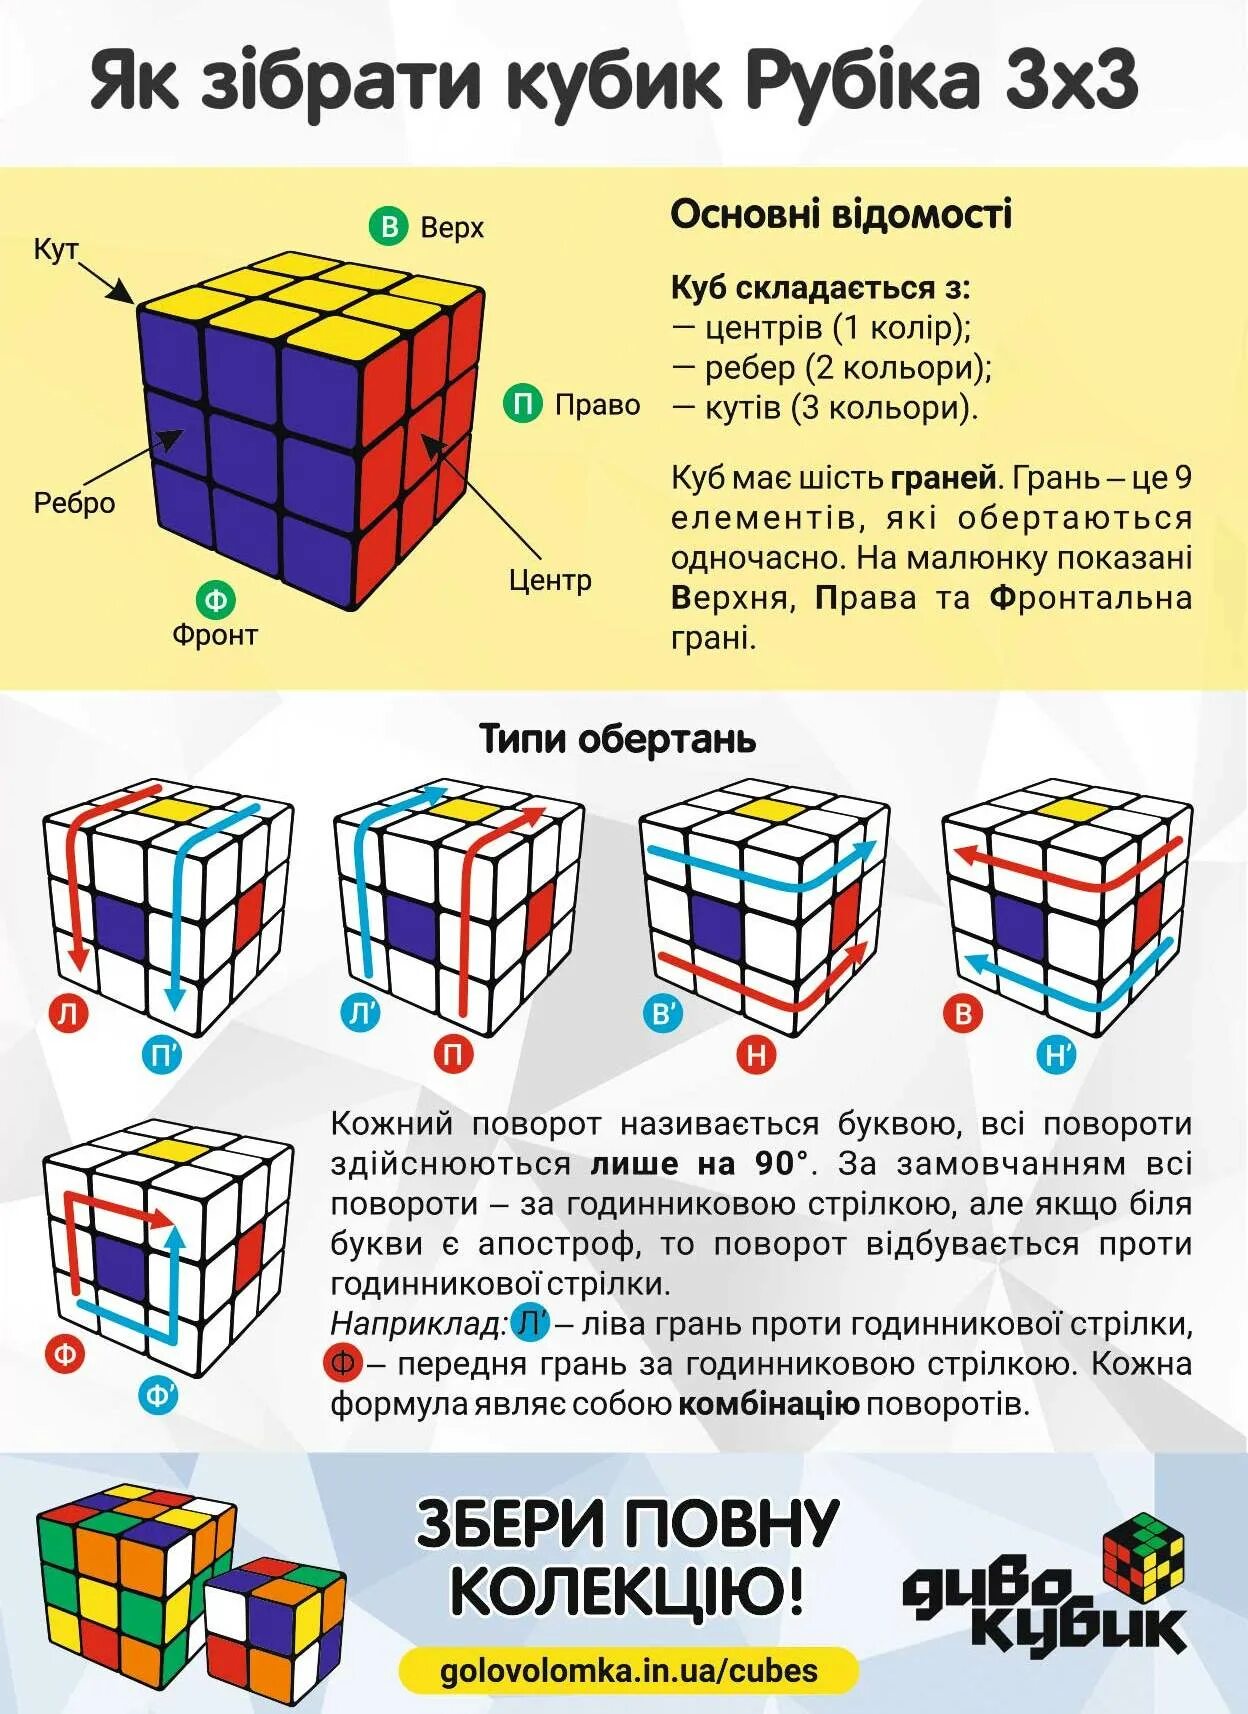 Самый простой способ собрать кубик. Схема сборки кубика Рубика 3х3 для начинающих. Комбинации кубика Рубика 3х3. Комбинации сборки кубика Рубика 3х3. Формулы кубика Рубика 3х3 для начинающих.